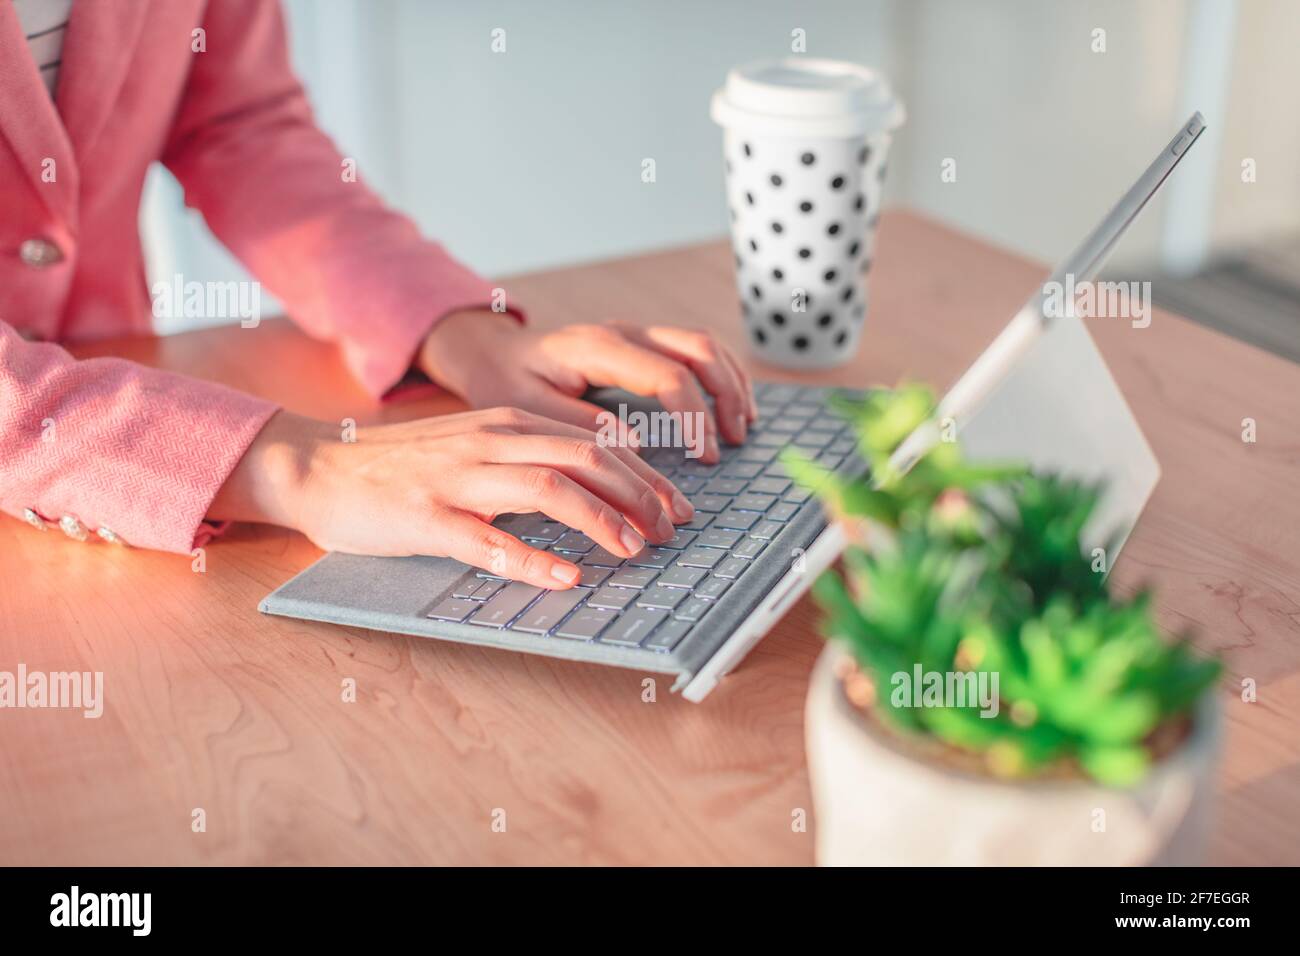 Donna che lavora a scrivere sulla tastiera del computer portatile a casa o sulla scrivania dell'ufficio. Closeup delle mani con computer, tazza da caffè, pianta succulente da tavolo Foto Stock